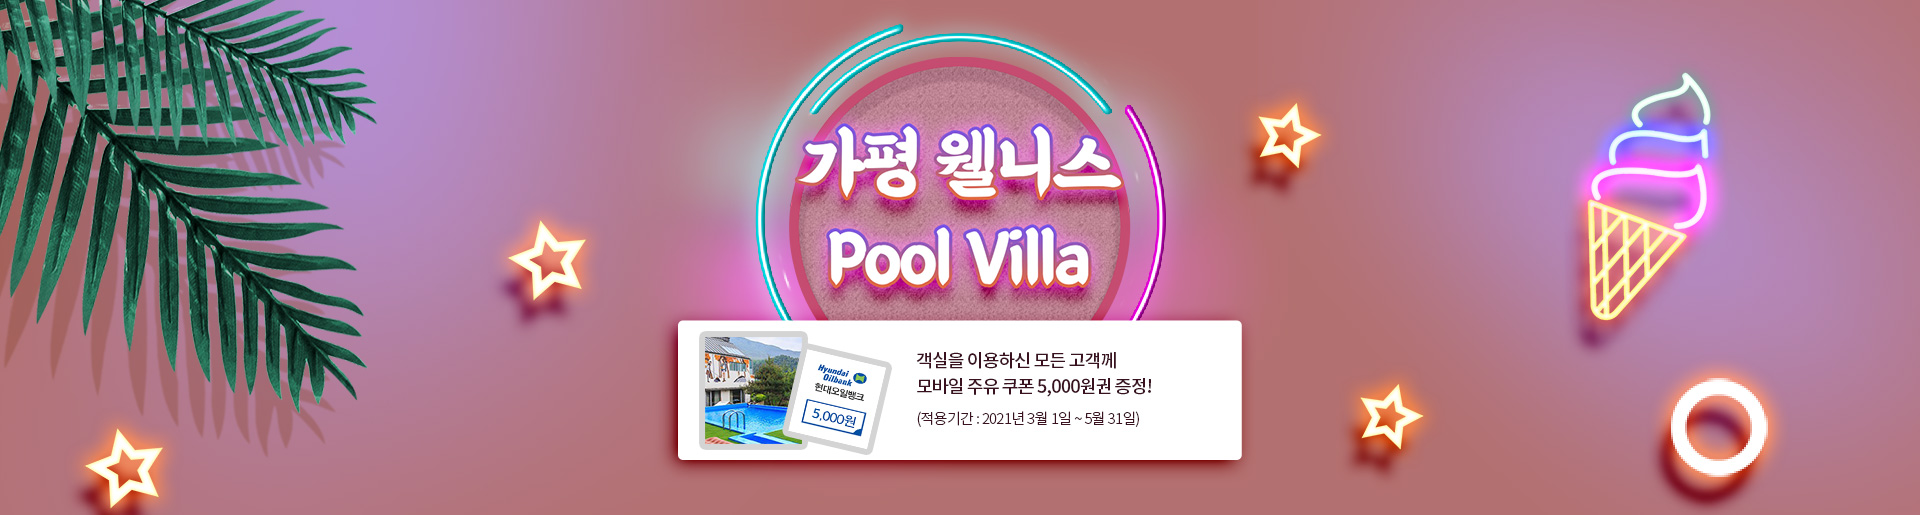 가평 웰니스! Pool Villa! 객실을 이용하신 모든 고객께 모바일 주유 쿠폰 5,000원권 증정! (적용기간 : 2020년 11월 20일~2021년 2월 28일)